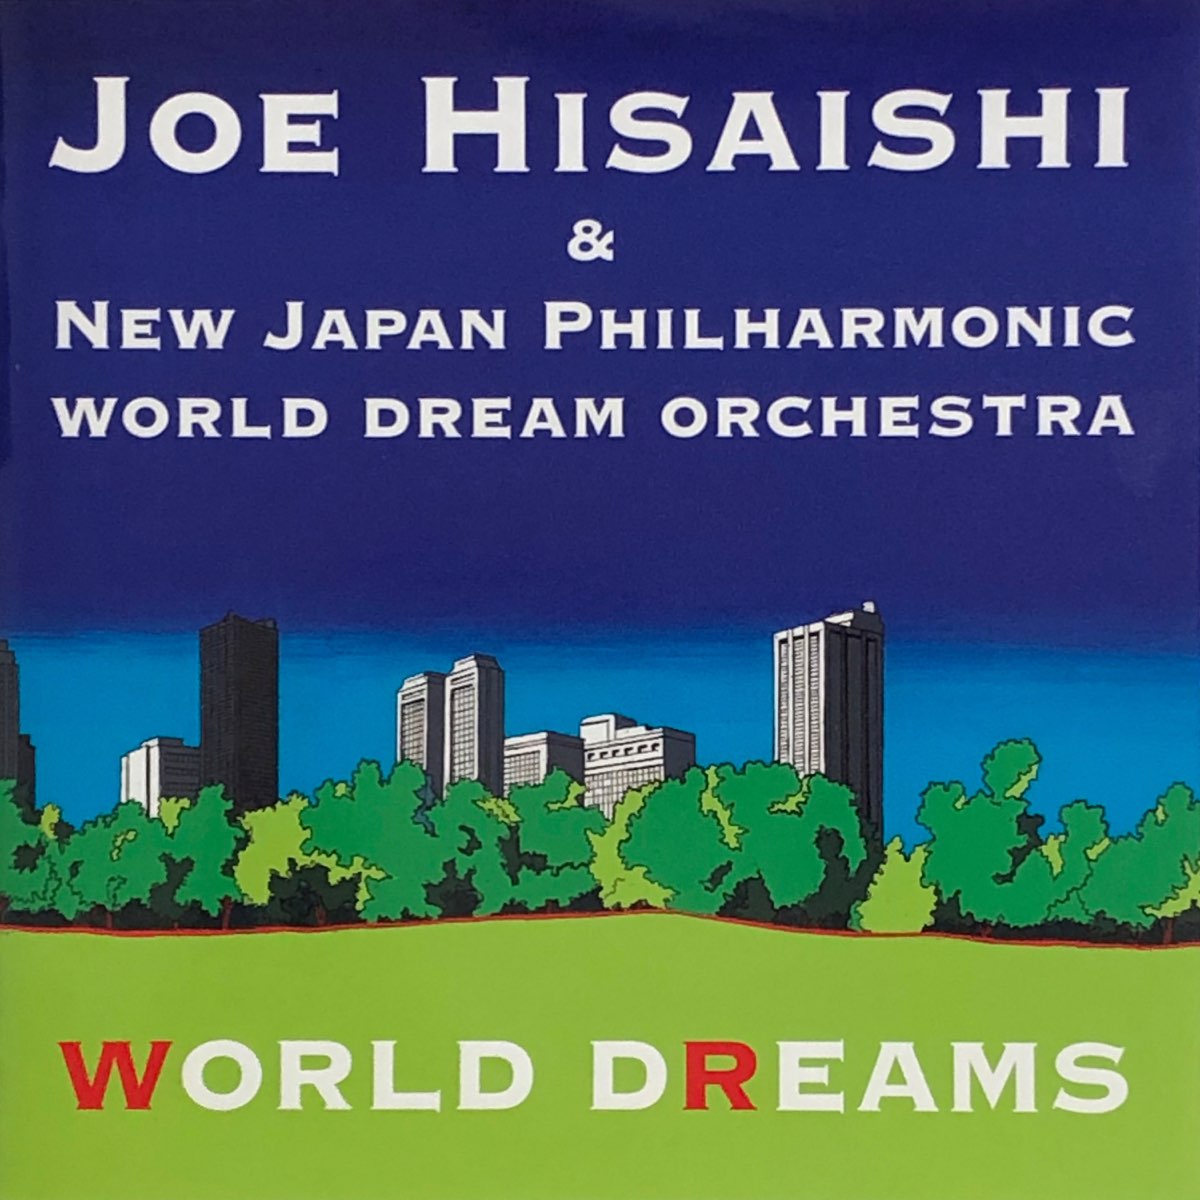 Dream orchestra